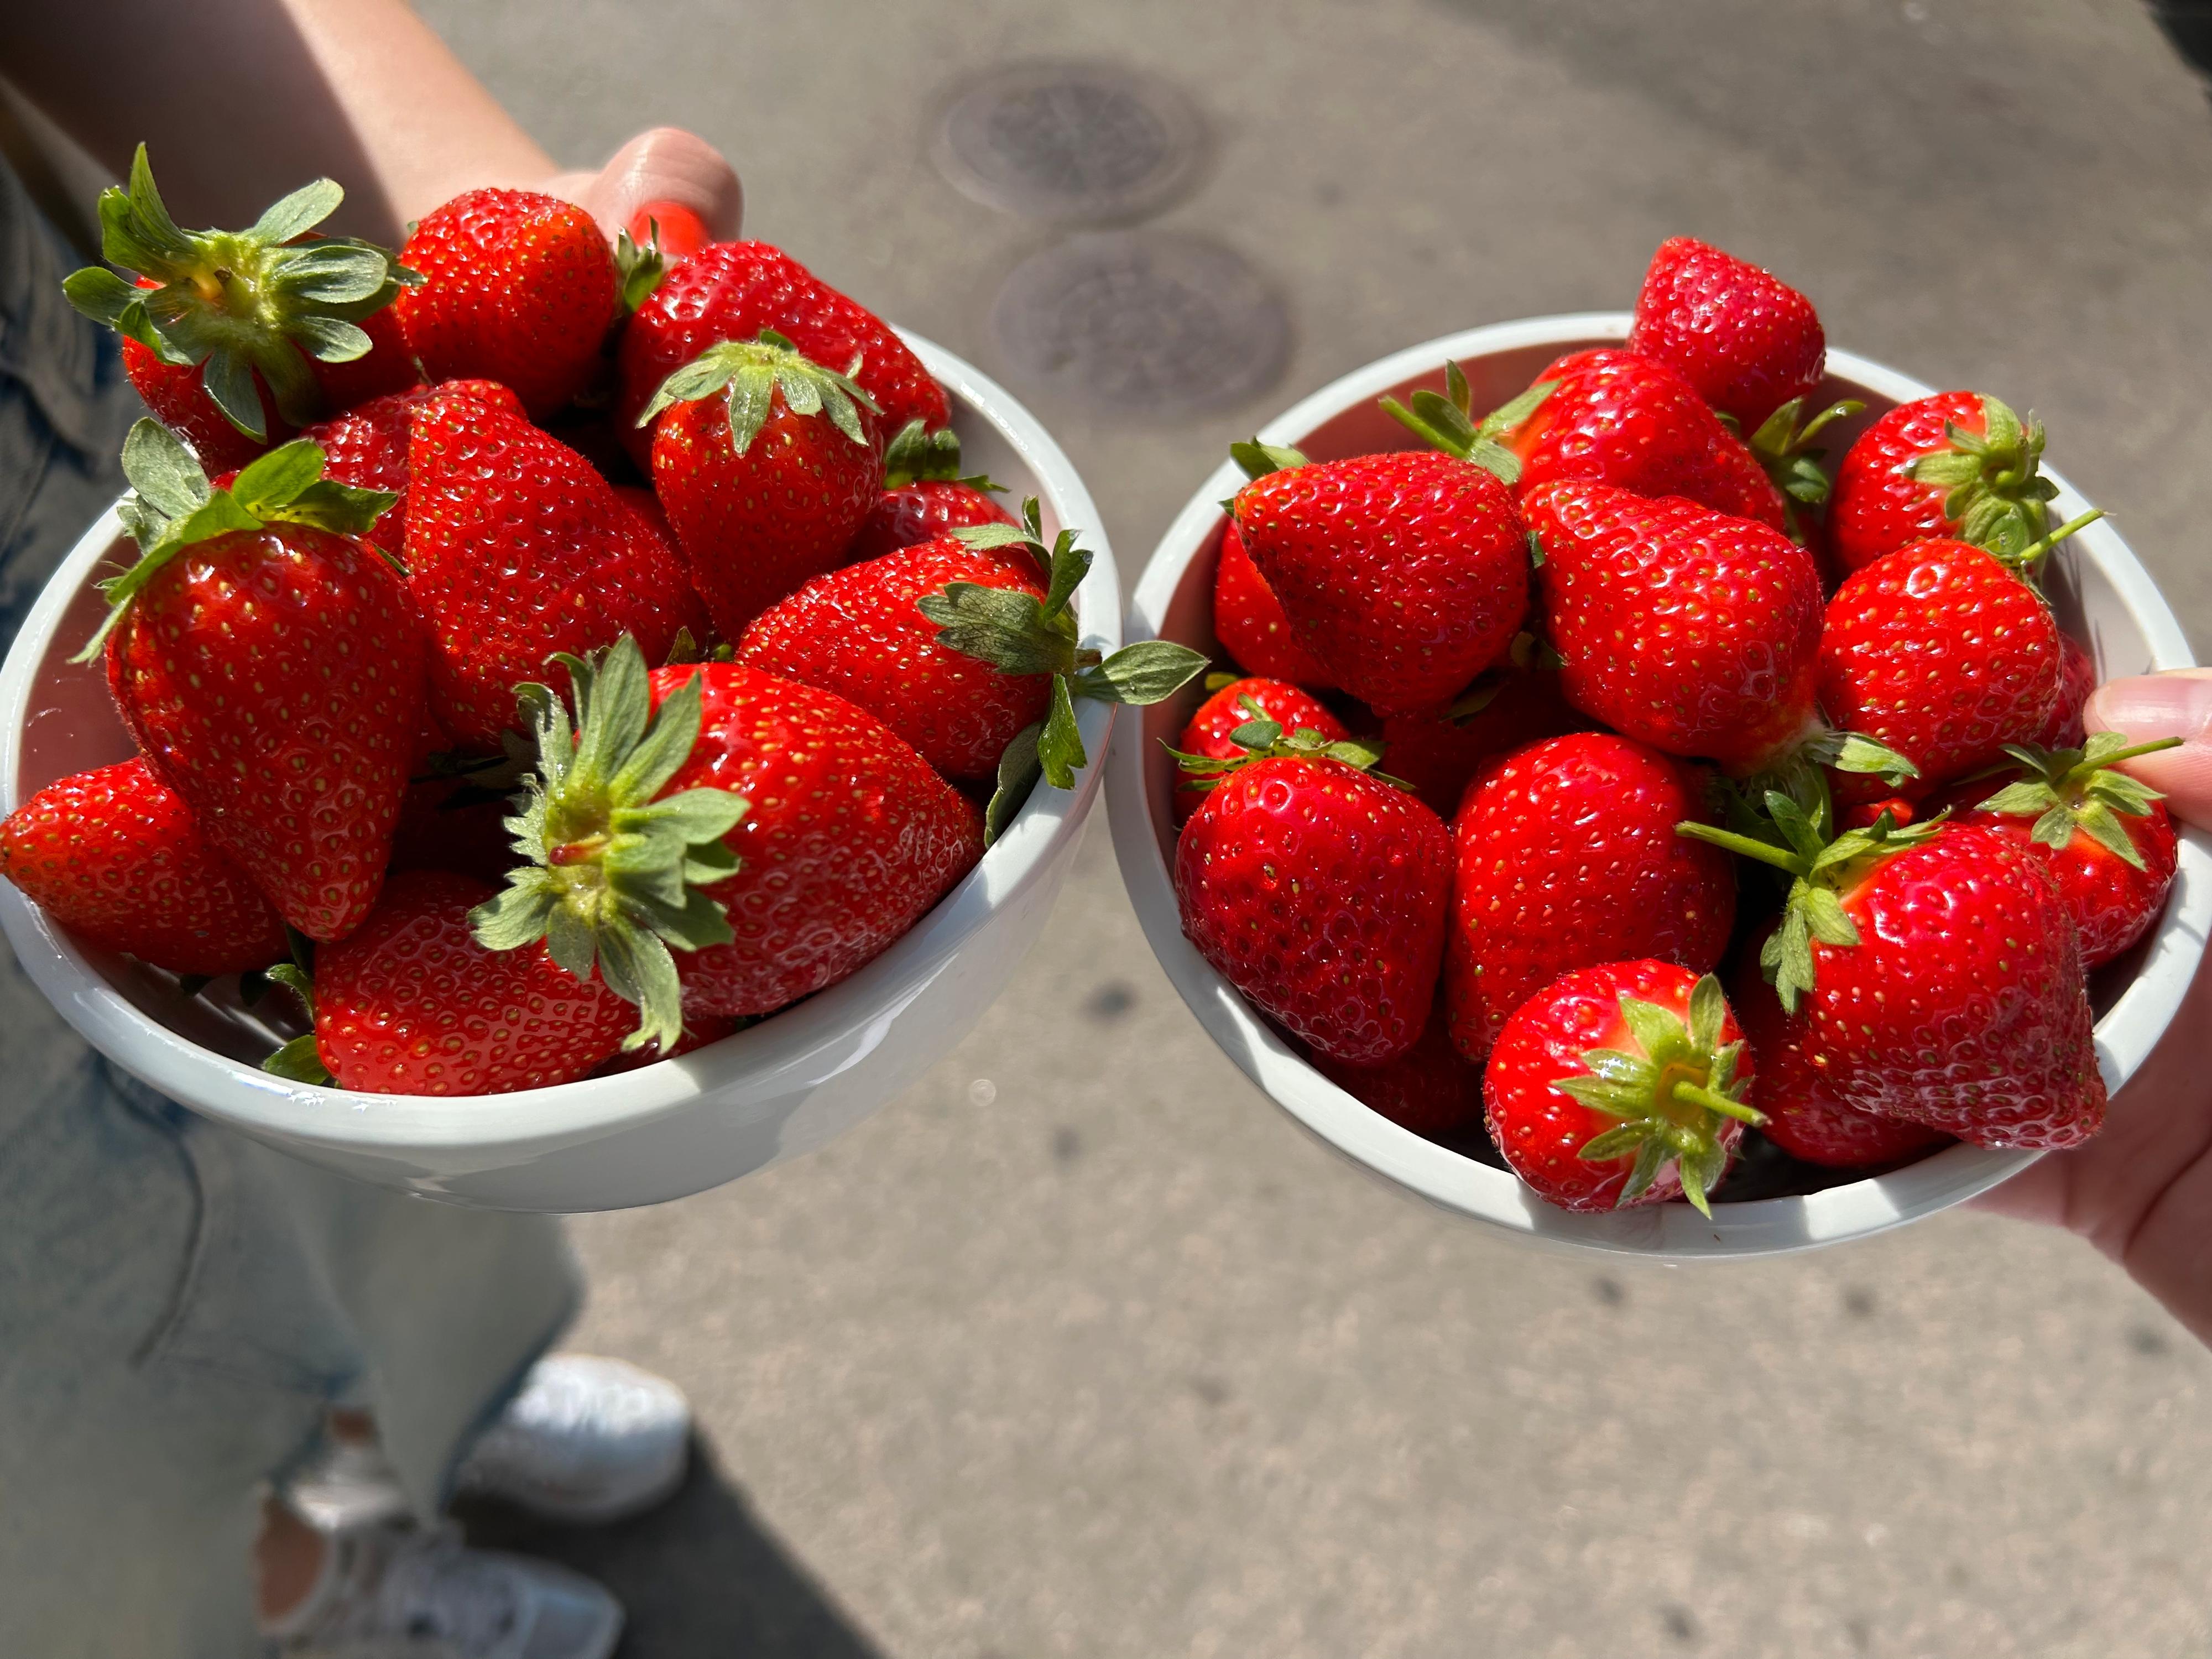 SOMMERSNACKS: Det finnes noen enkle grep man kan ta for å bevare den søte og friske smaken til jordbær.